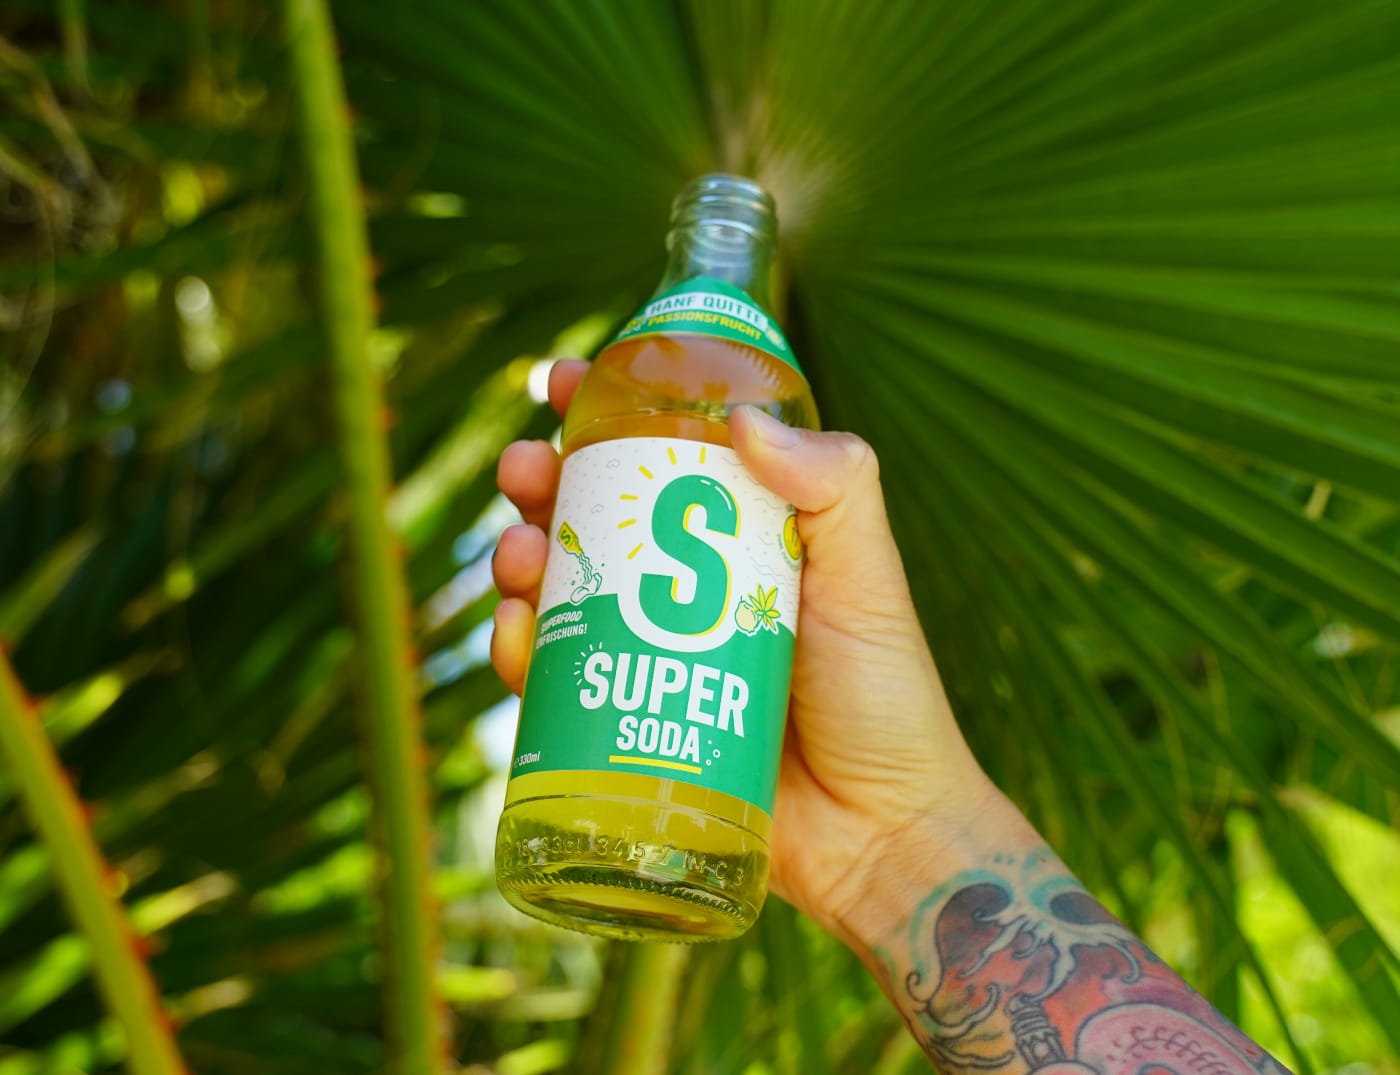 Super Soda Erfrischung // HIMBEER